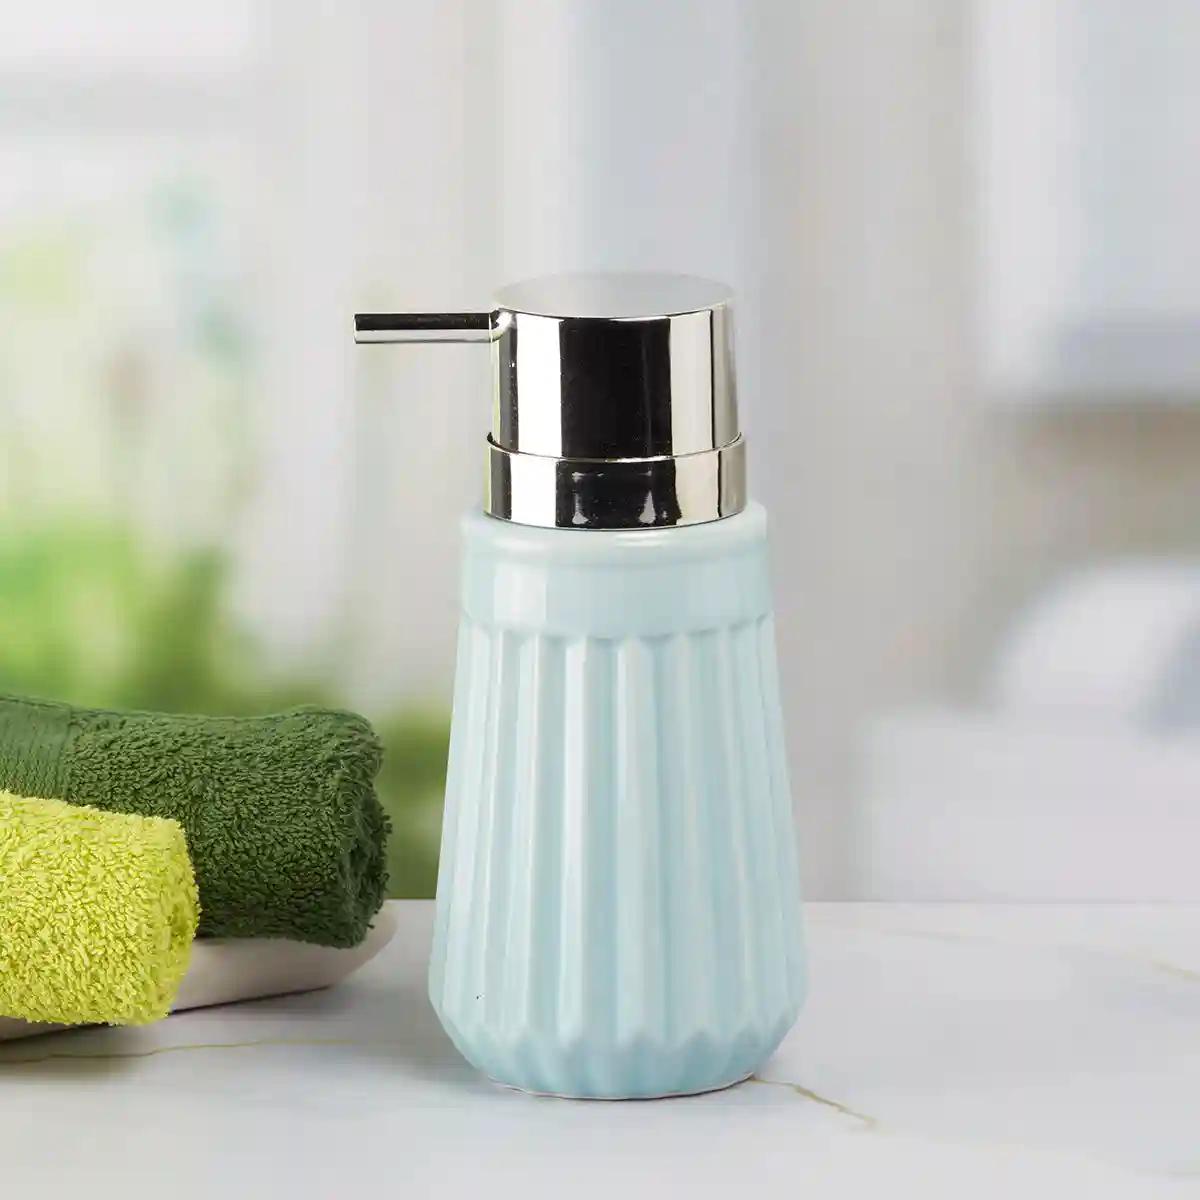 Kookee Ceramic Soap Dispenser for Bathroom handwash, refillable pump bottle for Kitchen hand wash basin, Set of 2 - Blue (7980)